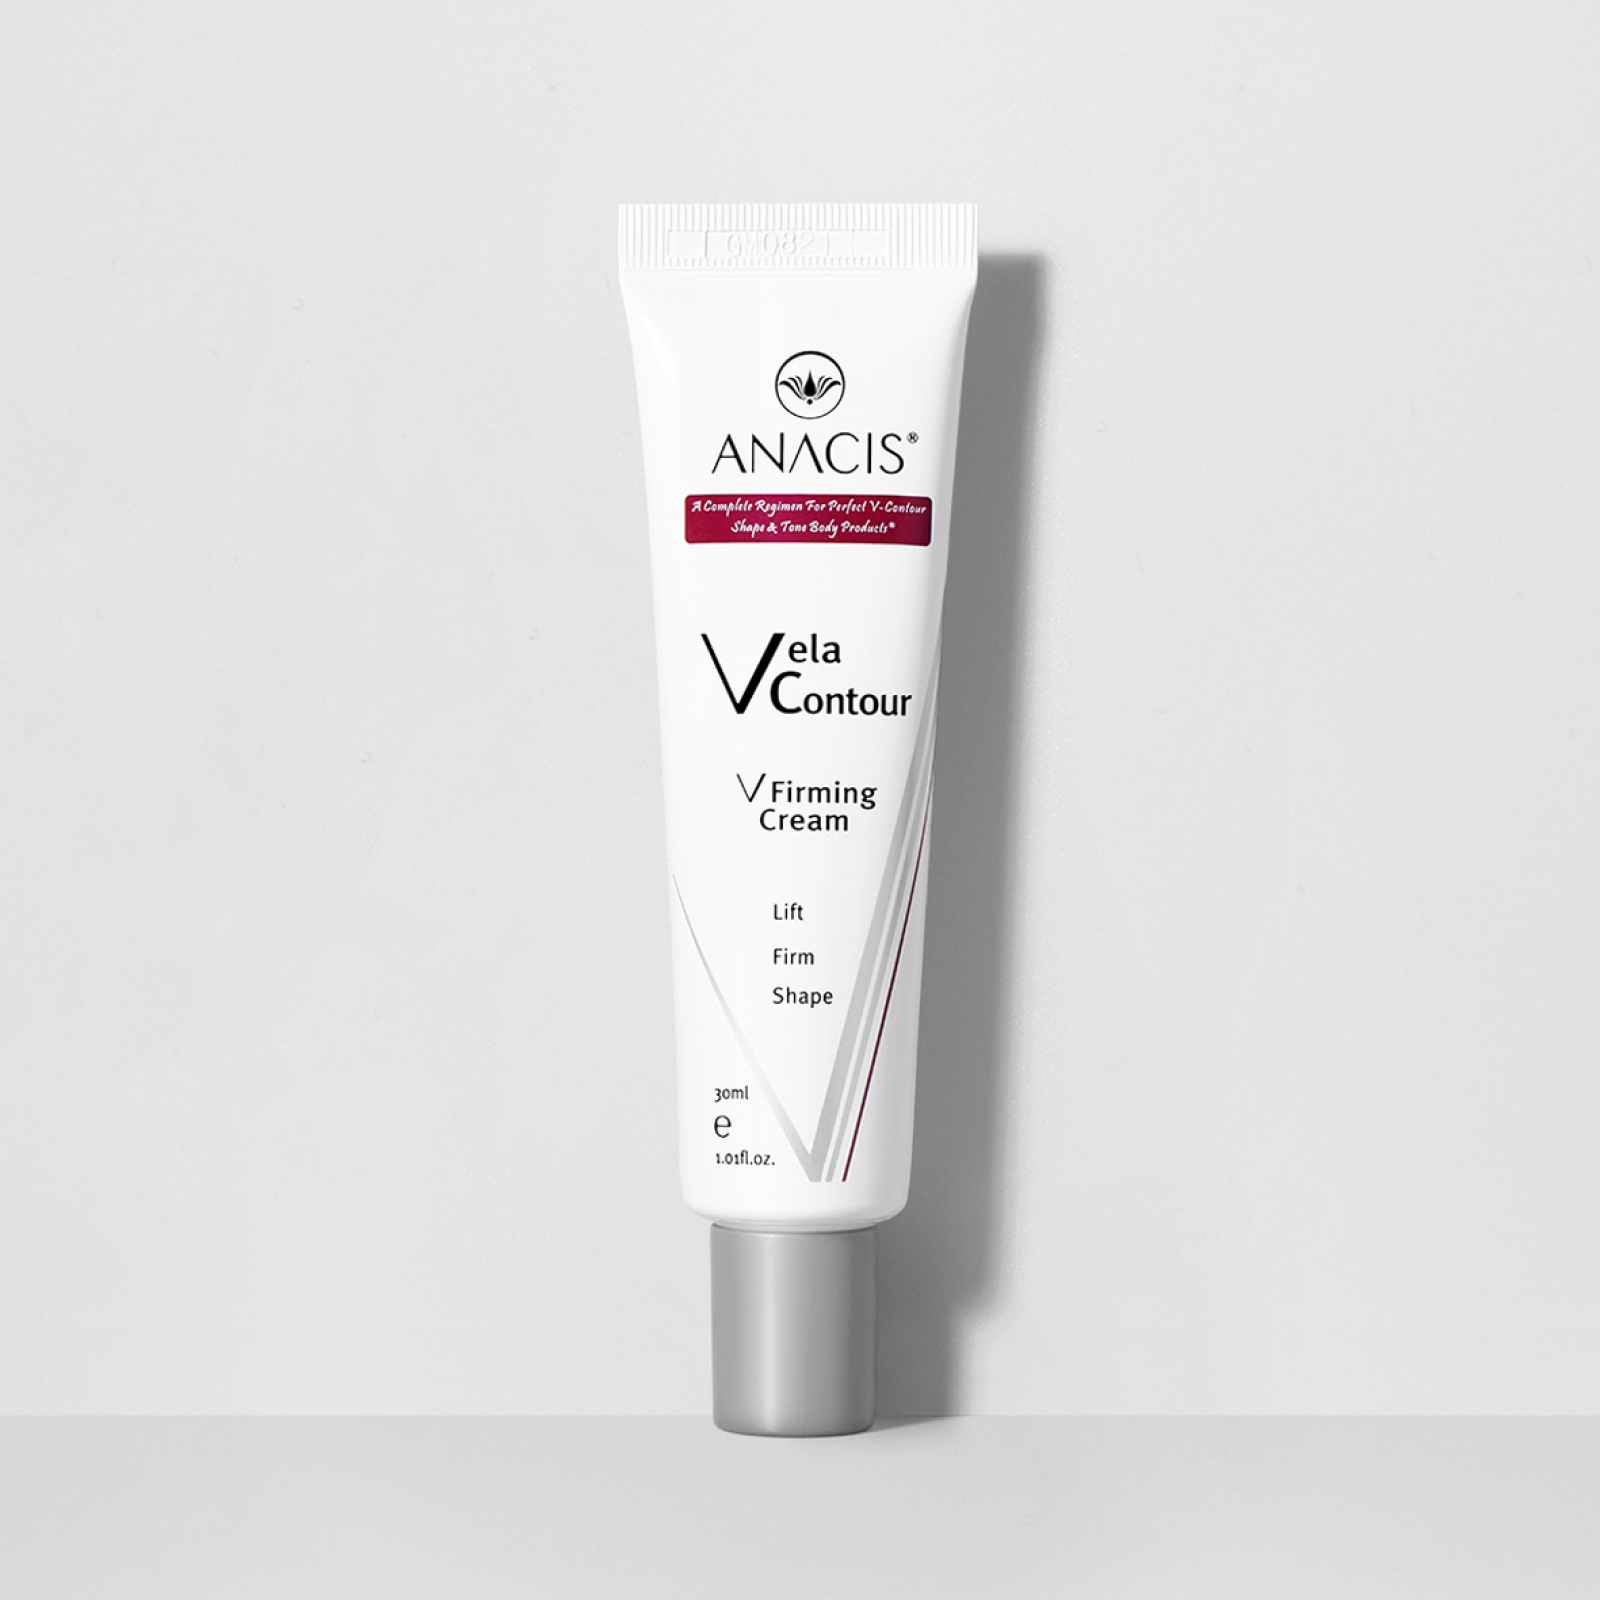 Лифтинг-крем для овала лица Vela Contour V Firming Cream, 30 мл